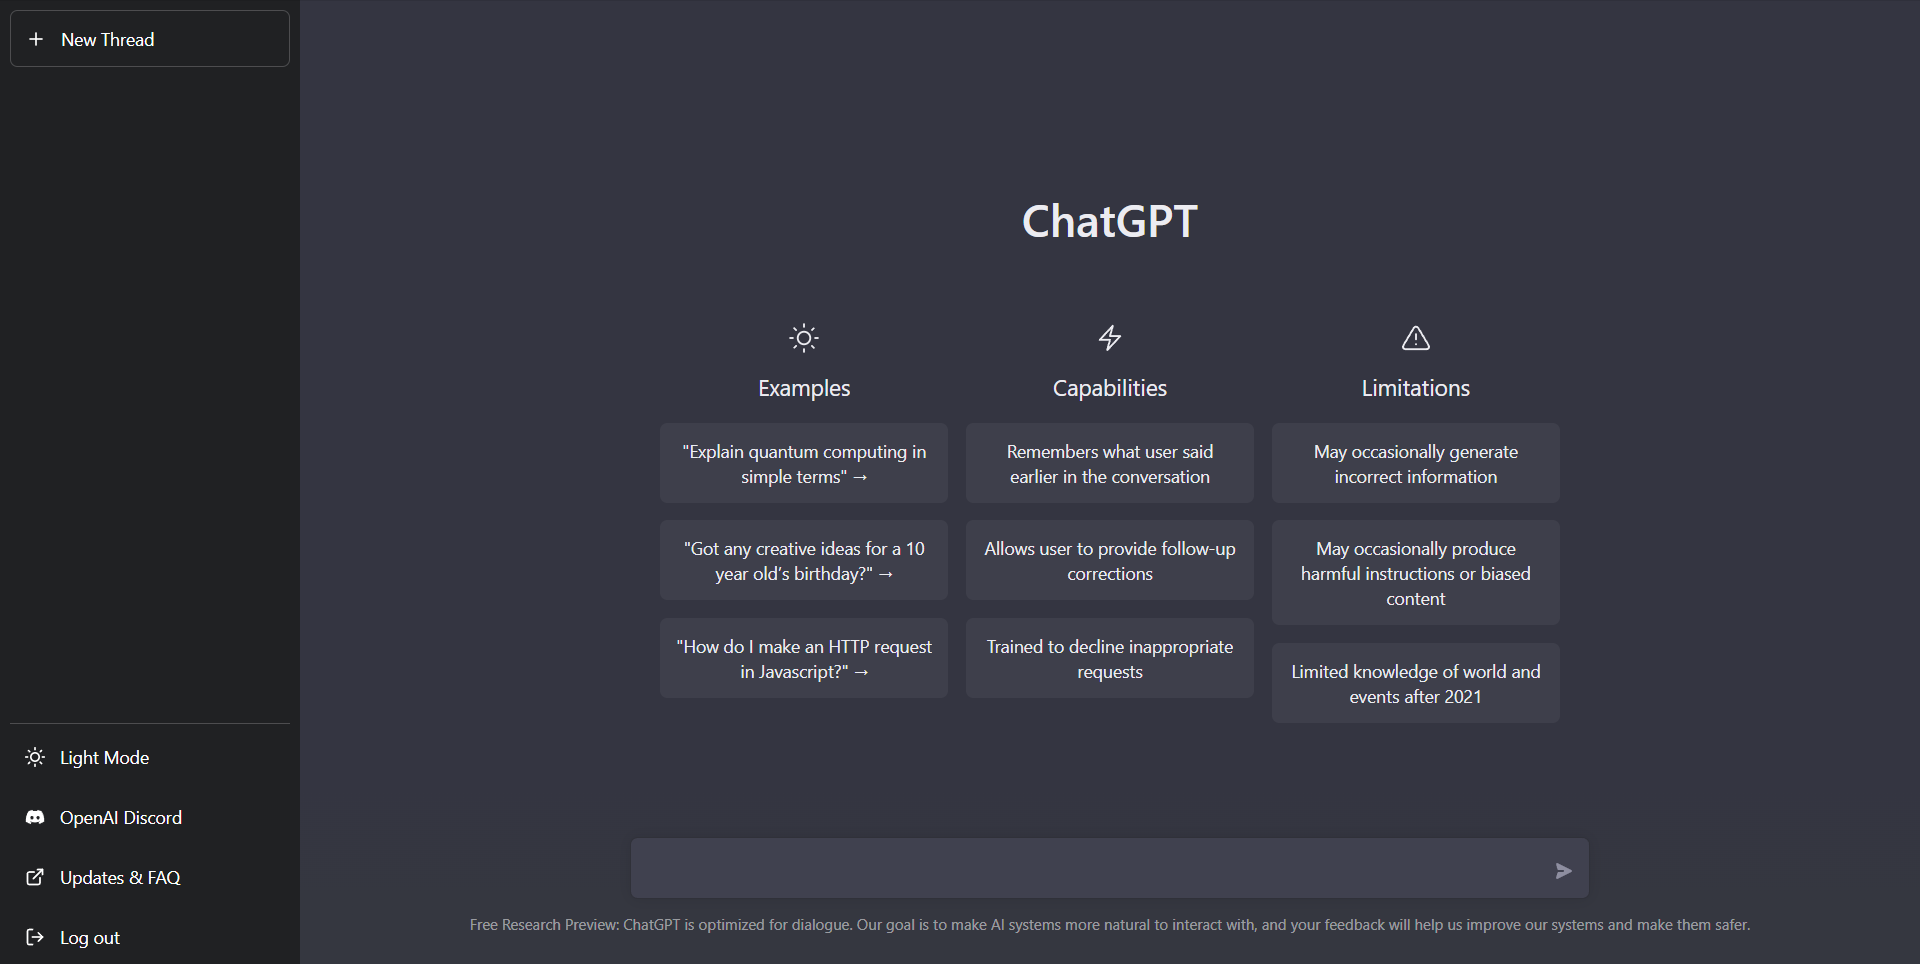 O CHATGPT é uma inteligência artificial (IA) criada para ajudar os usuários a interagir em tempo real com sistemas de computador